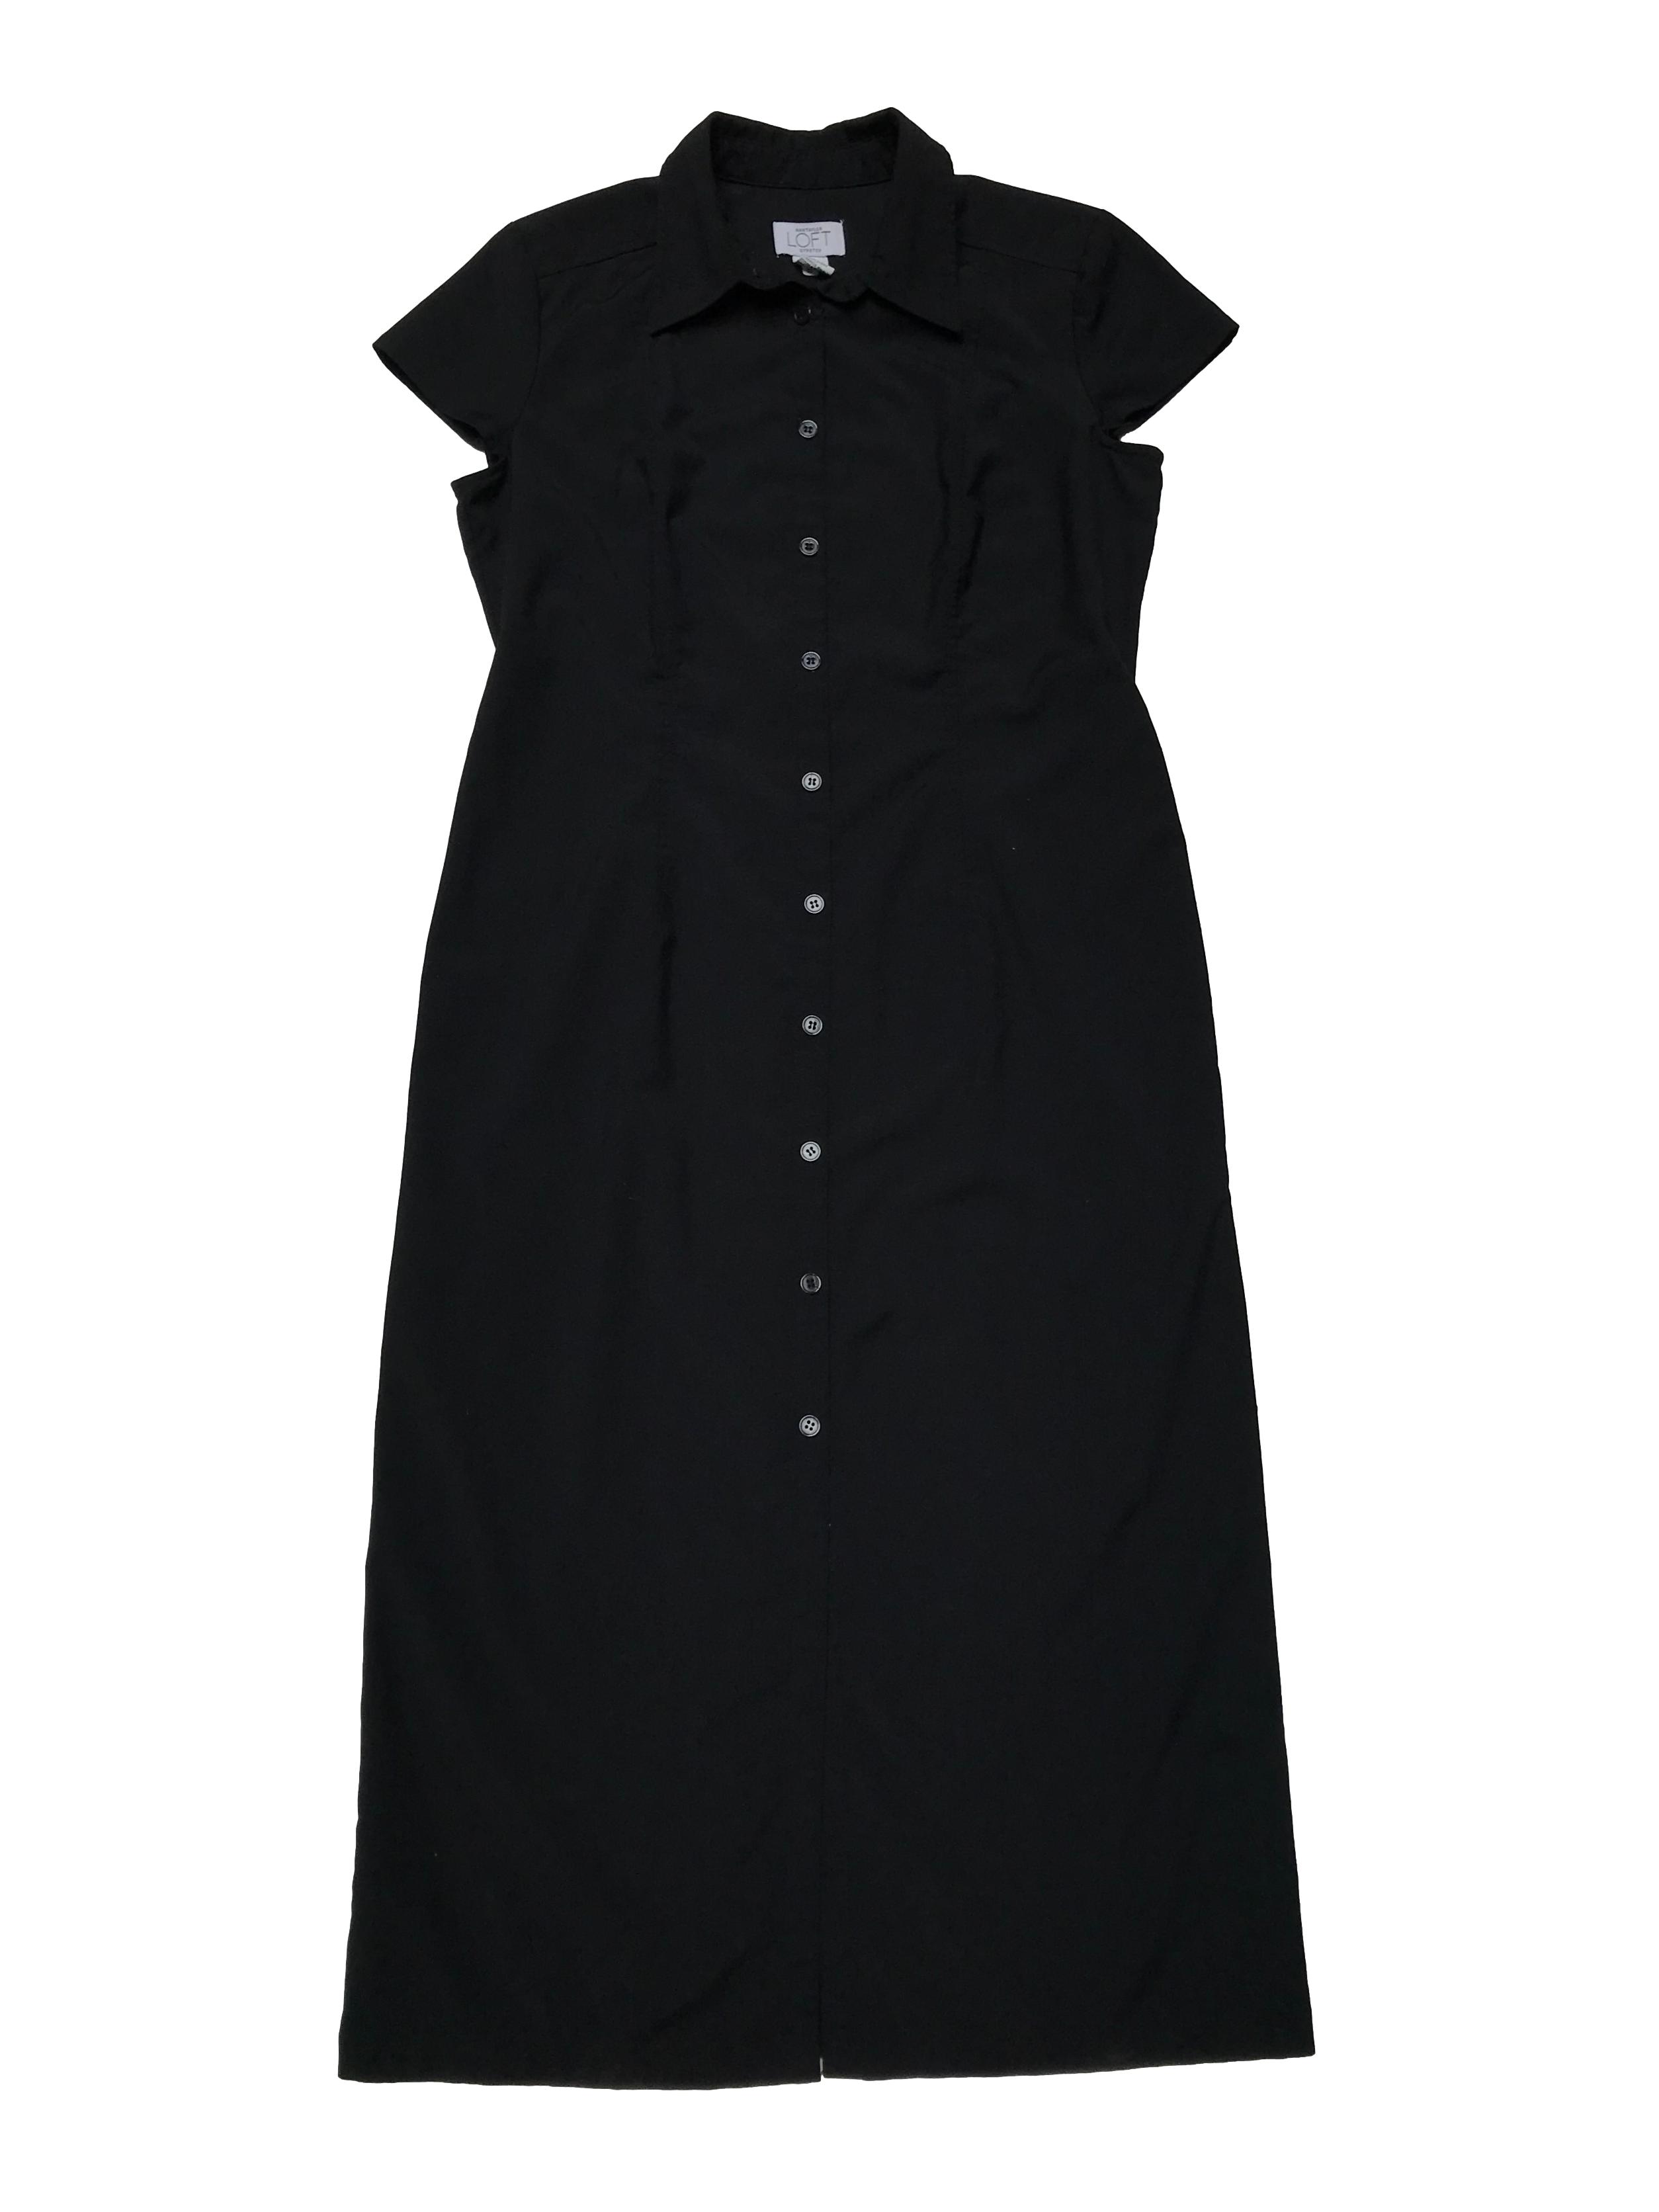 Vestido largo Loft camisero, negro de tela plana tipo camisa, con pinzas delanteras y traseras. Busto 102cm Largo 118cm